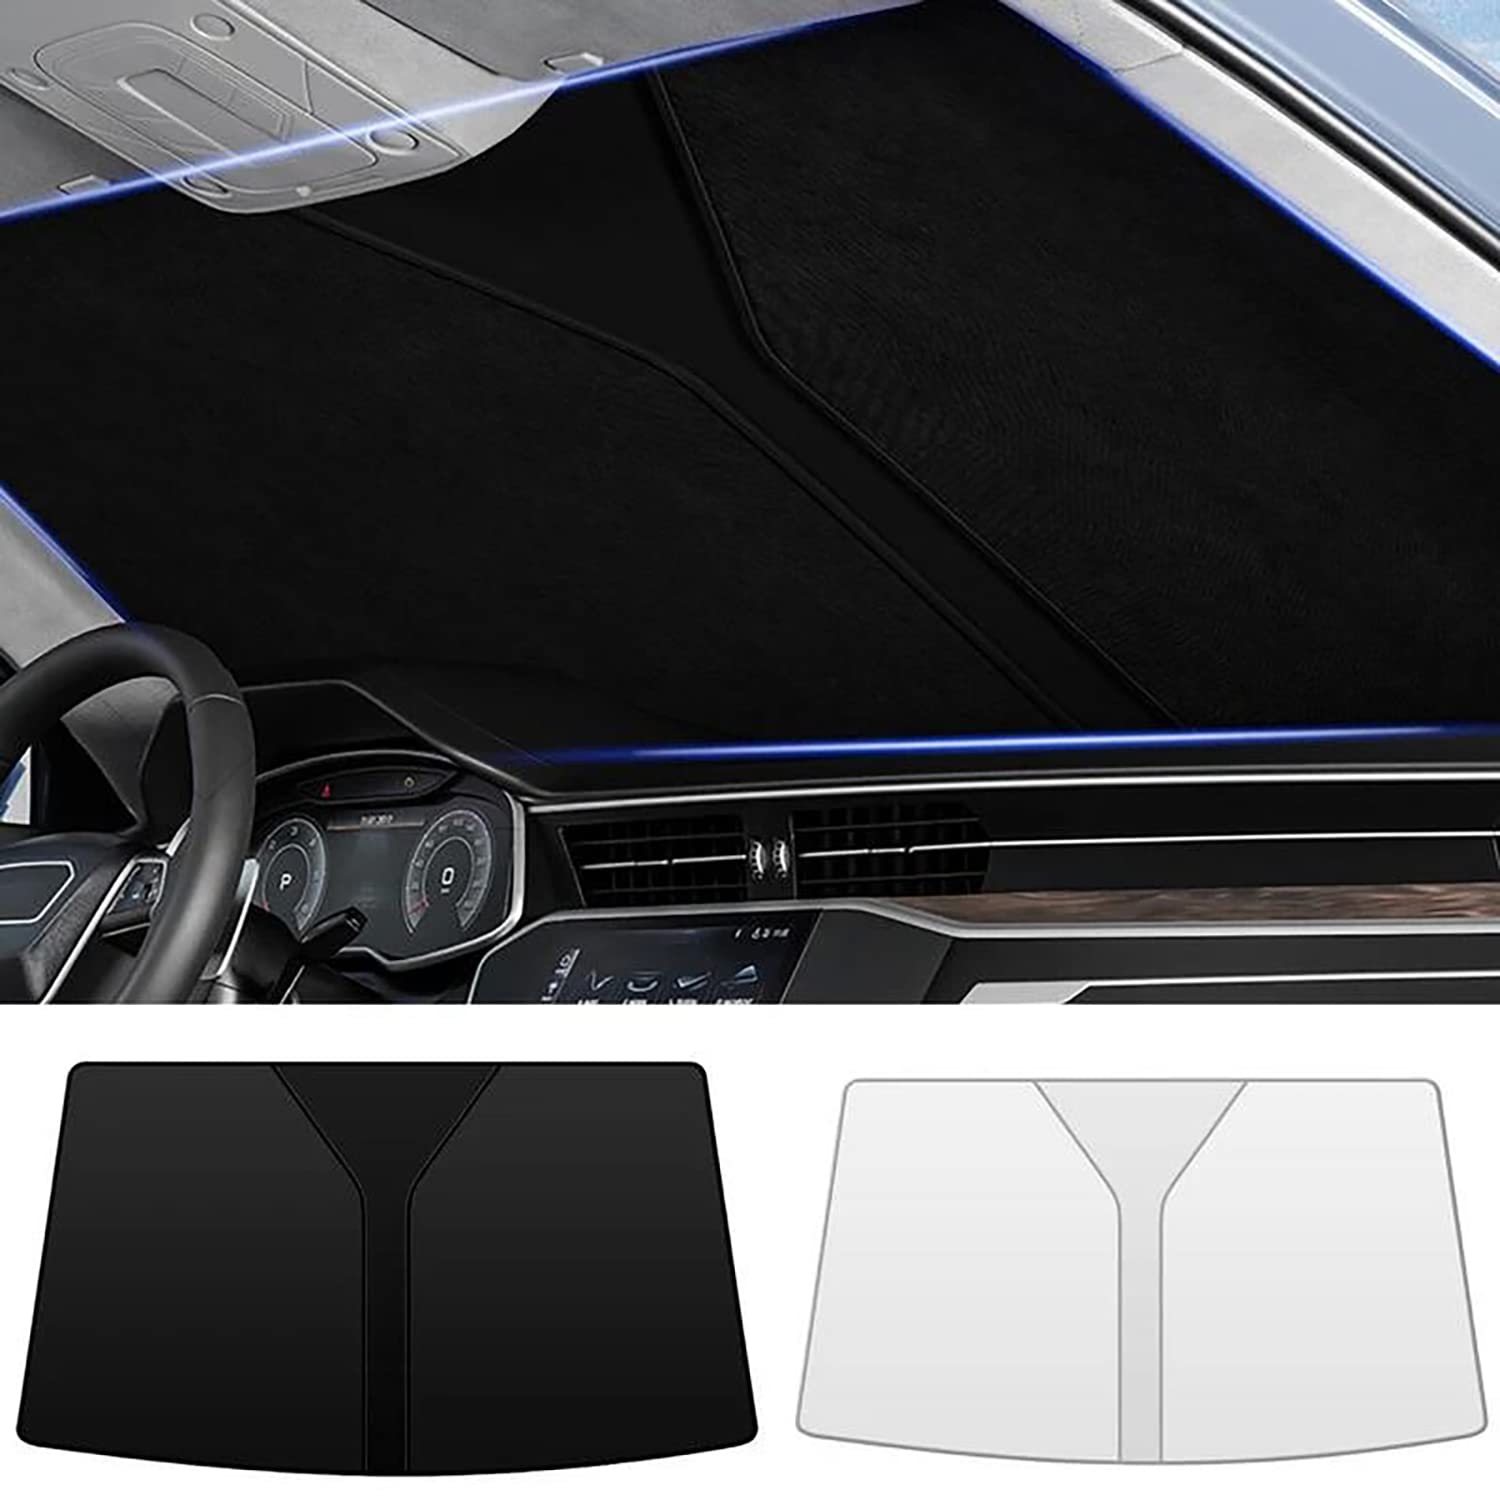 Frontscheiben Sonnenschutz Passend für VW Touareg Ⅲ (CR) 2018 2019 2020 2021 2022 2023+, Hitzeschutz Auto UV-Reflexion, Faltbares Design, Einfache Lagerung,- Silver von TANEND